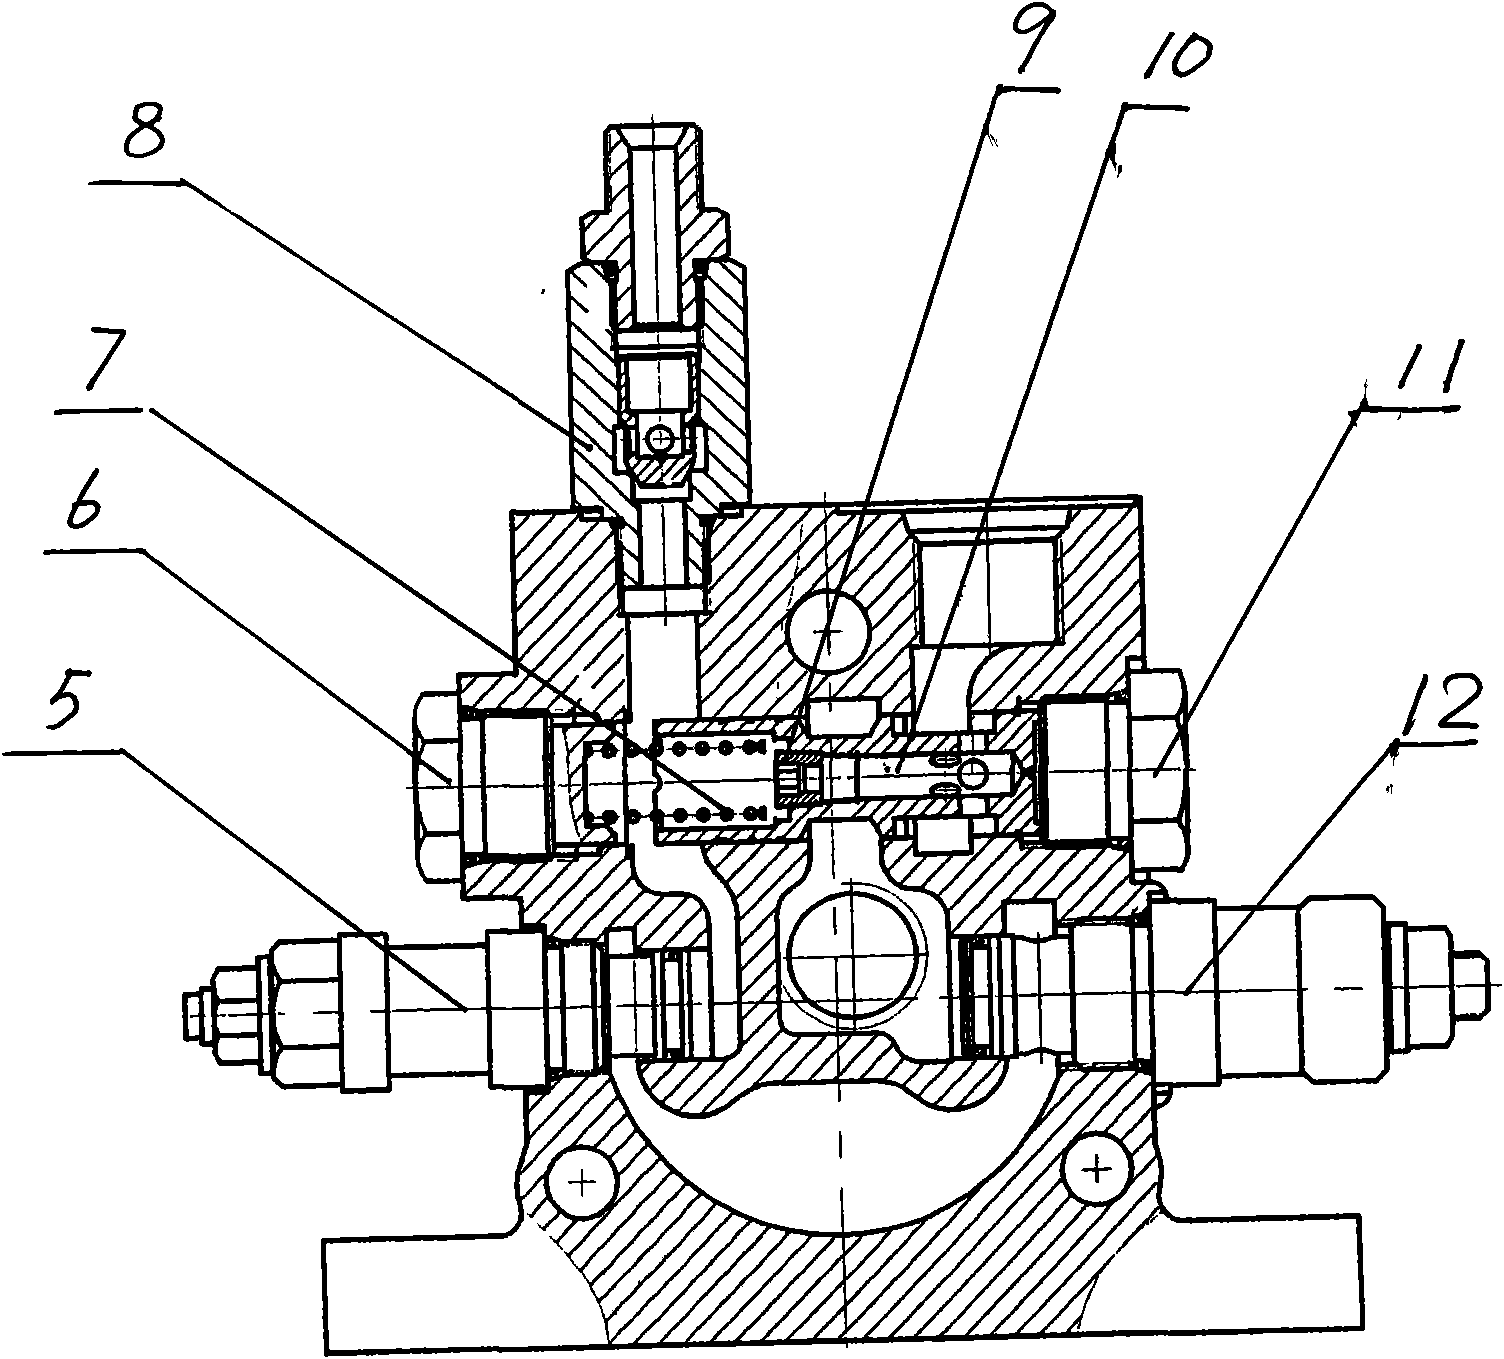 Multichannel conversion valve